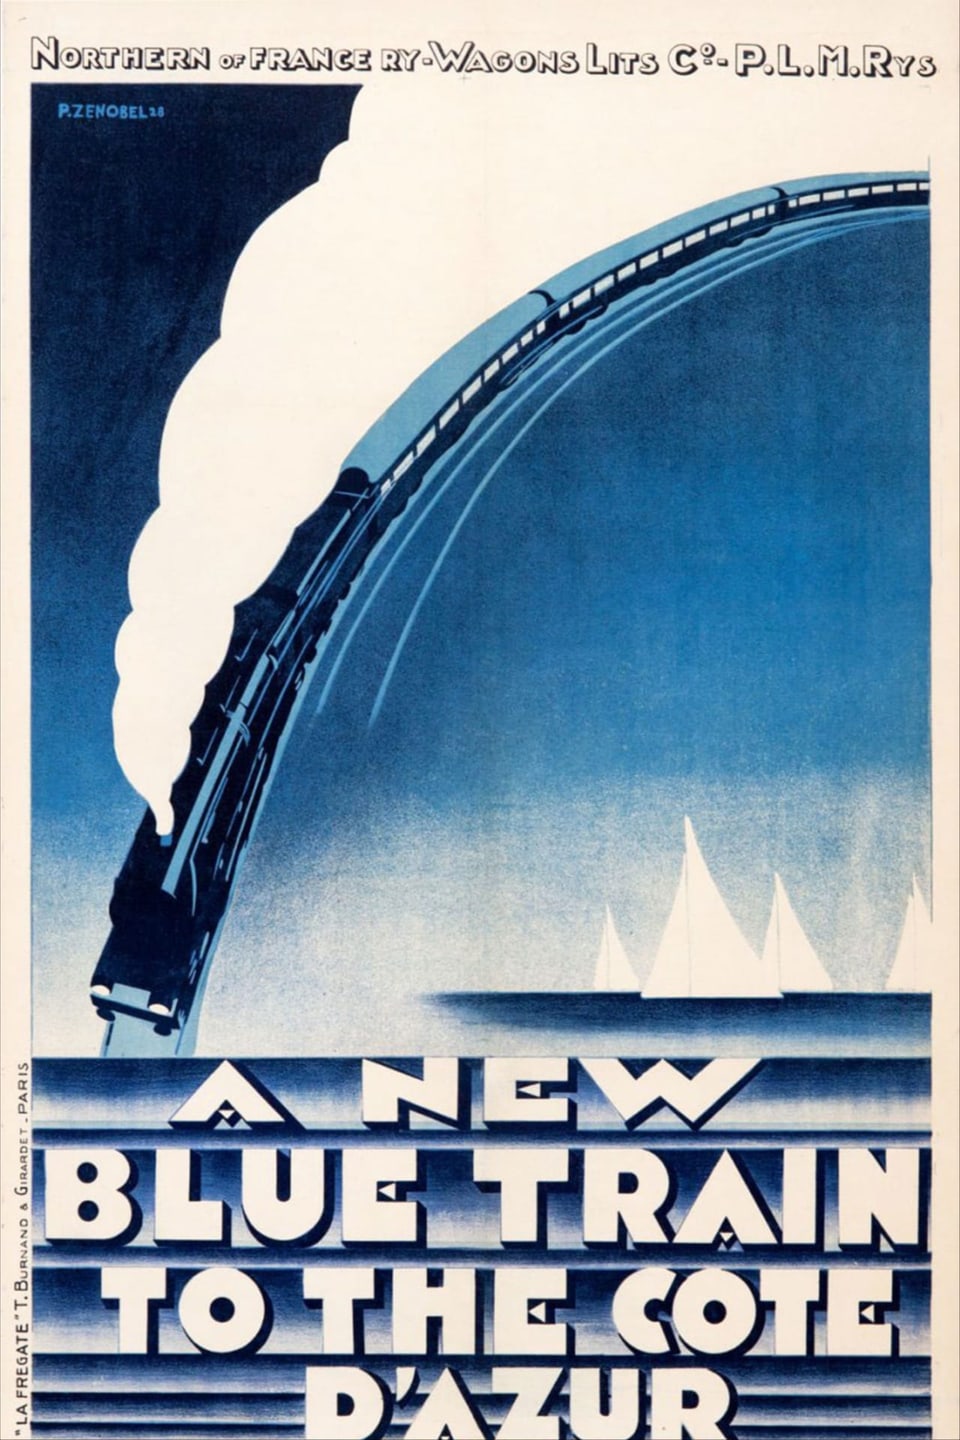 Plakatwerbung für einen Zug an die Cote d'azur.